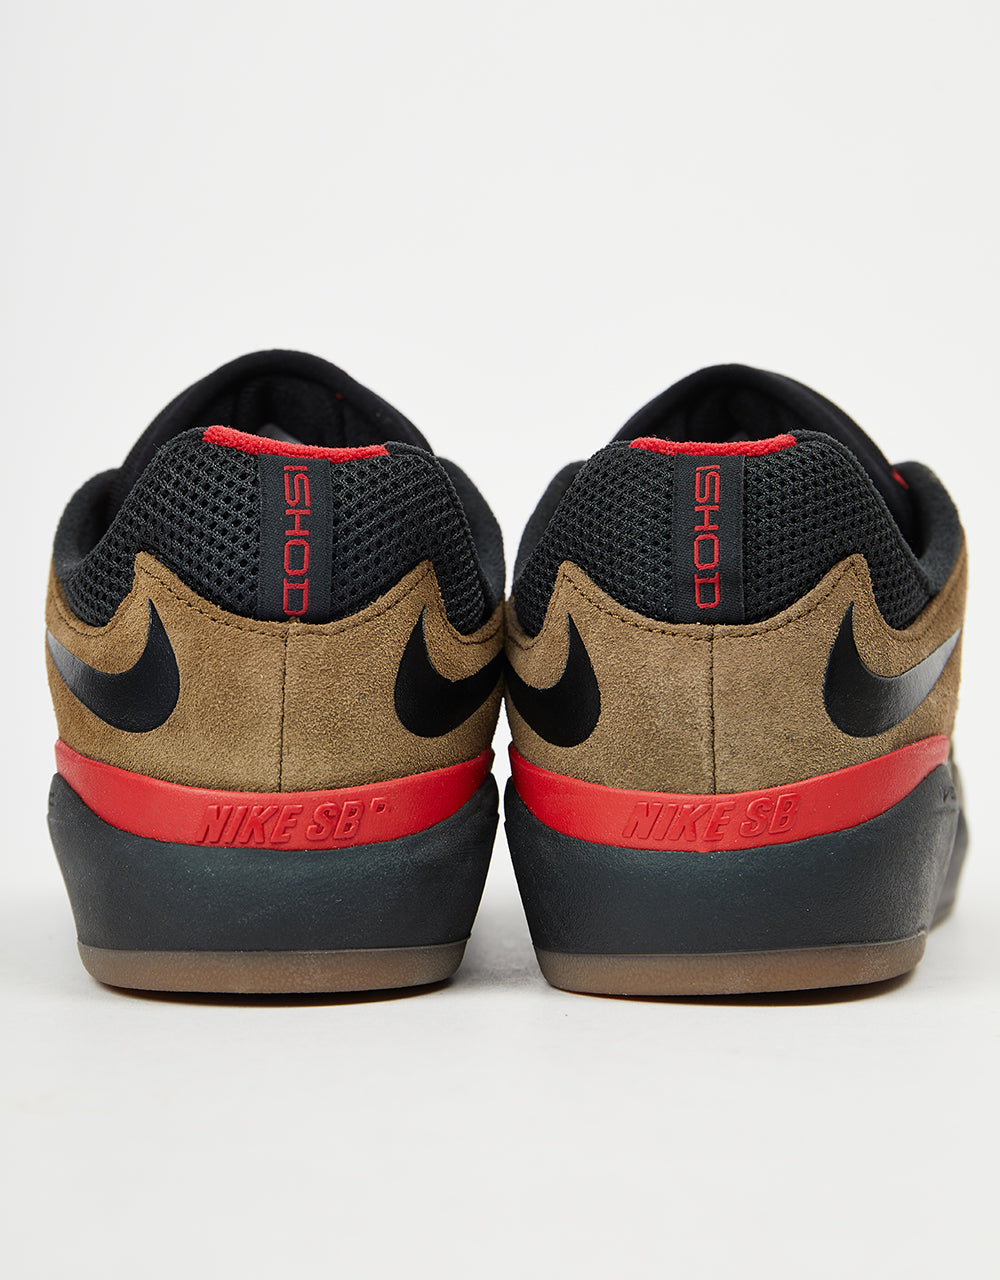 Nike SB Ishod Skate Shoes - Lt Olive/Black-Lt Olive-Varsity Red-Black-Gum Dk Brown